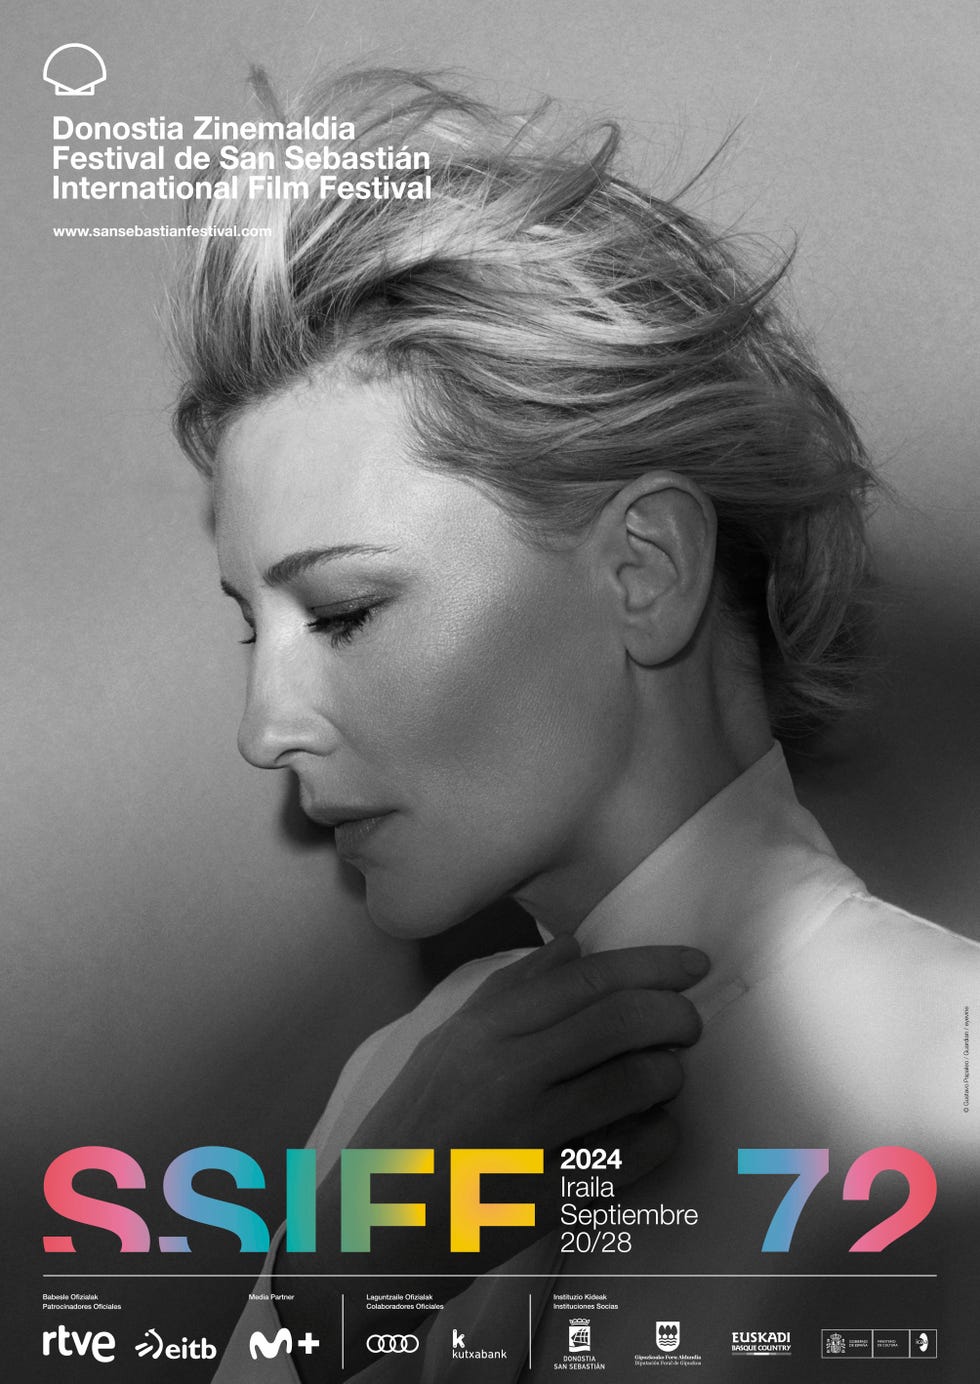 Festival de San Sebastián 2024: Cate Blanchett, Premio Donostia e imagen del cartel del Zinemaldia